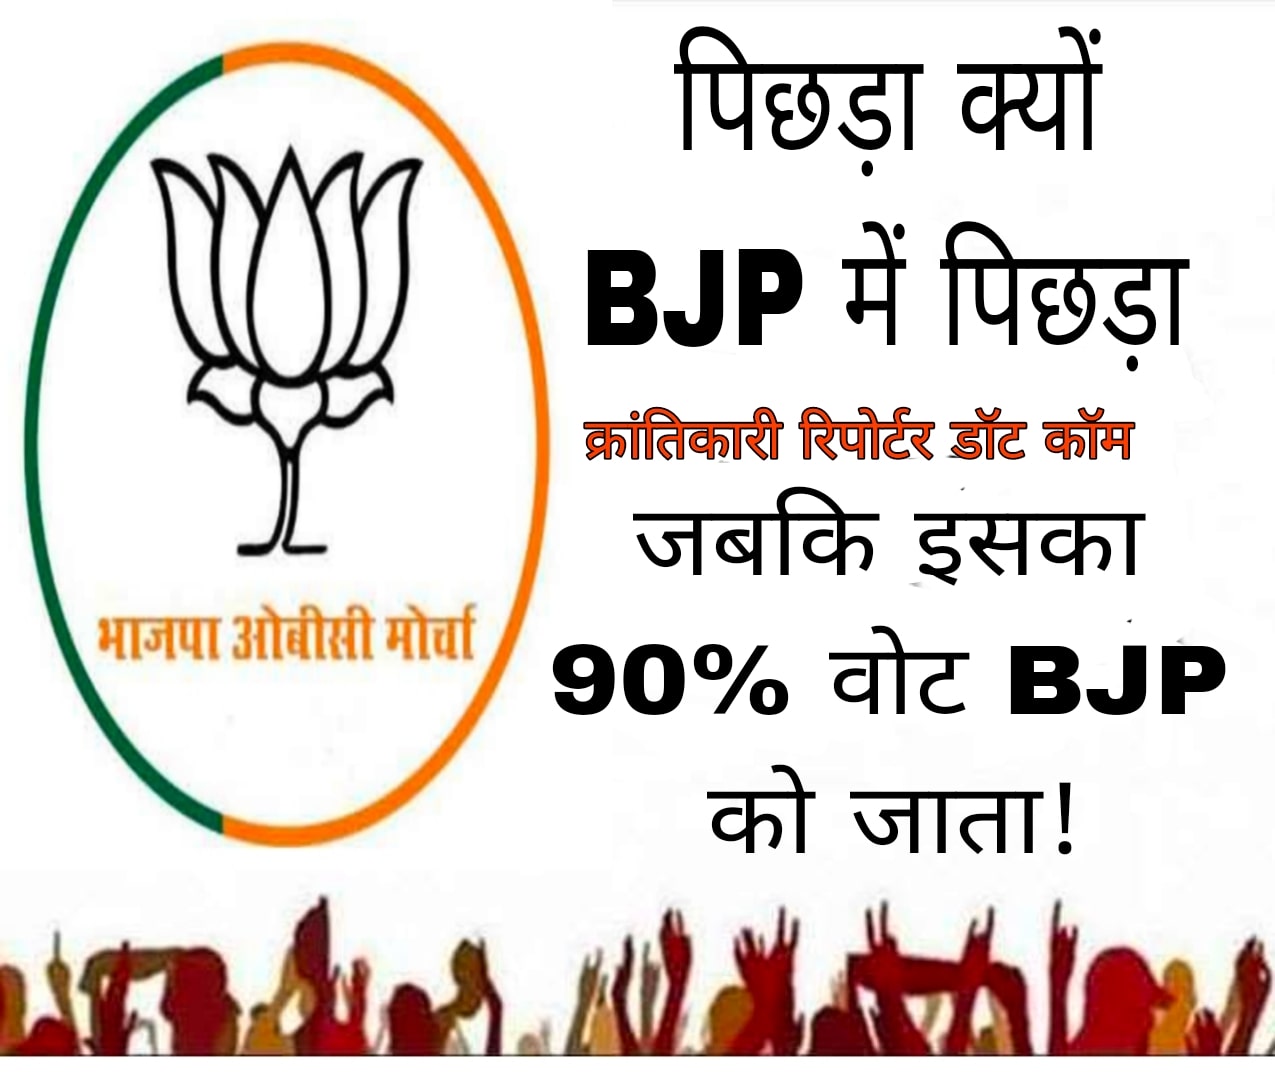 #मंदसौर संसदीय क्षेत्र में पिछड़ा वर्ग का वोट प्रतिशत 55% है... बावजूद इसके BJP 8 में से 1 ही सीट इस वर्ग को प्रतिनिधित्व देती है...!*